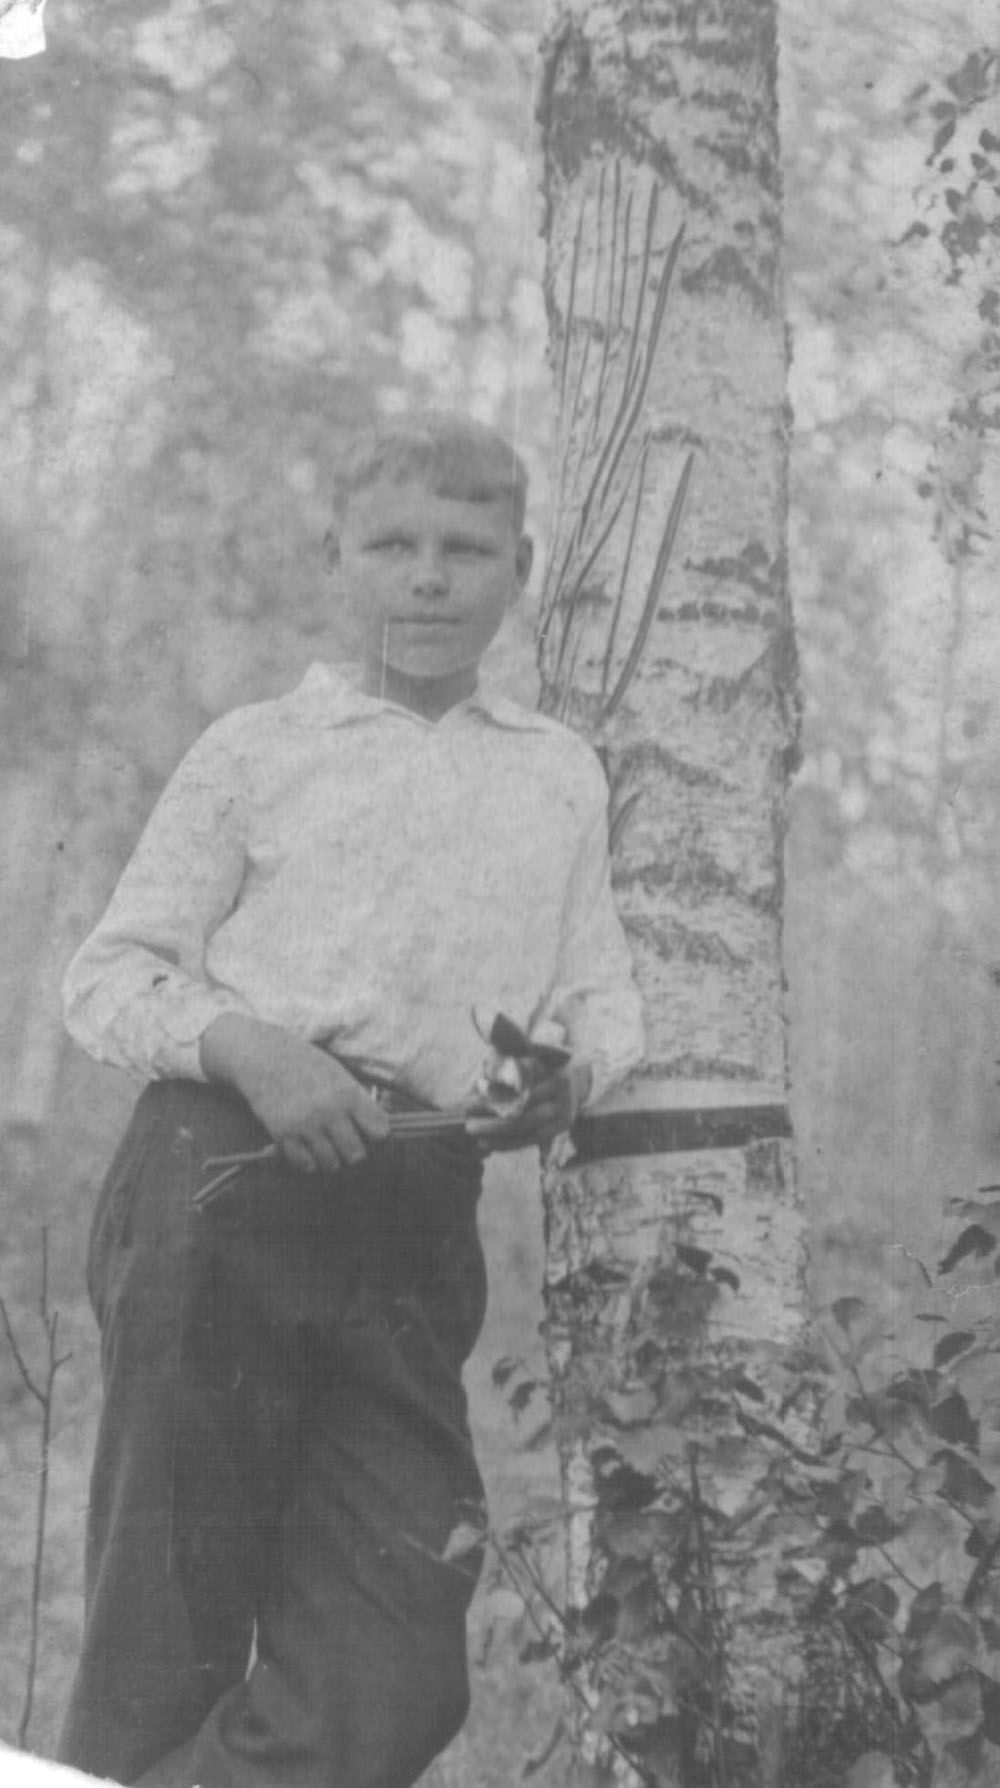 Фотография в мальчишеском возрасте 37-39 г.г. г. Горький